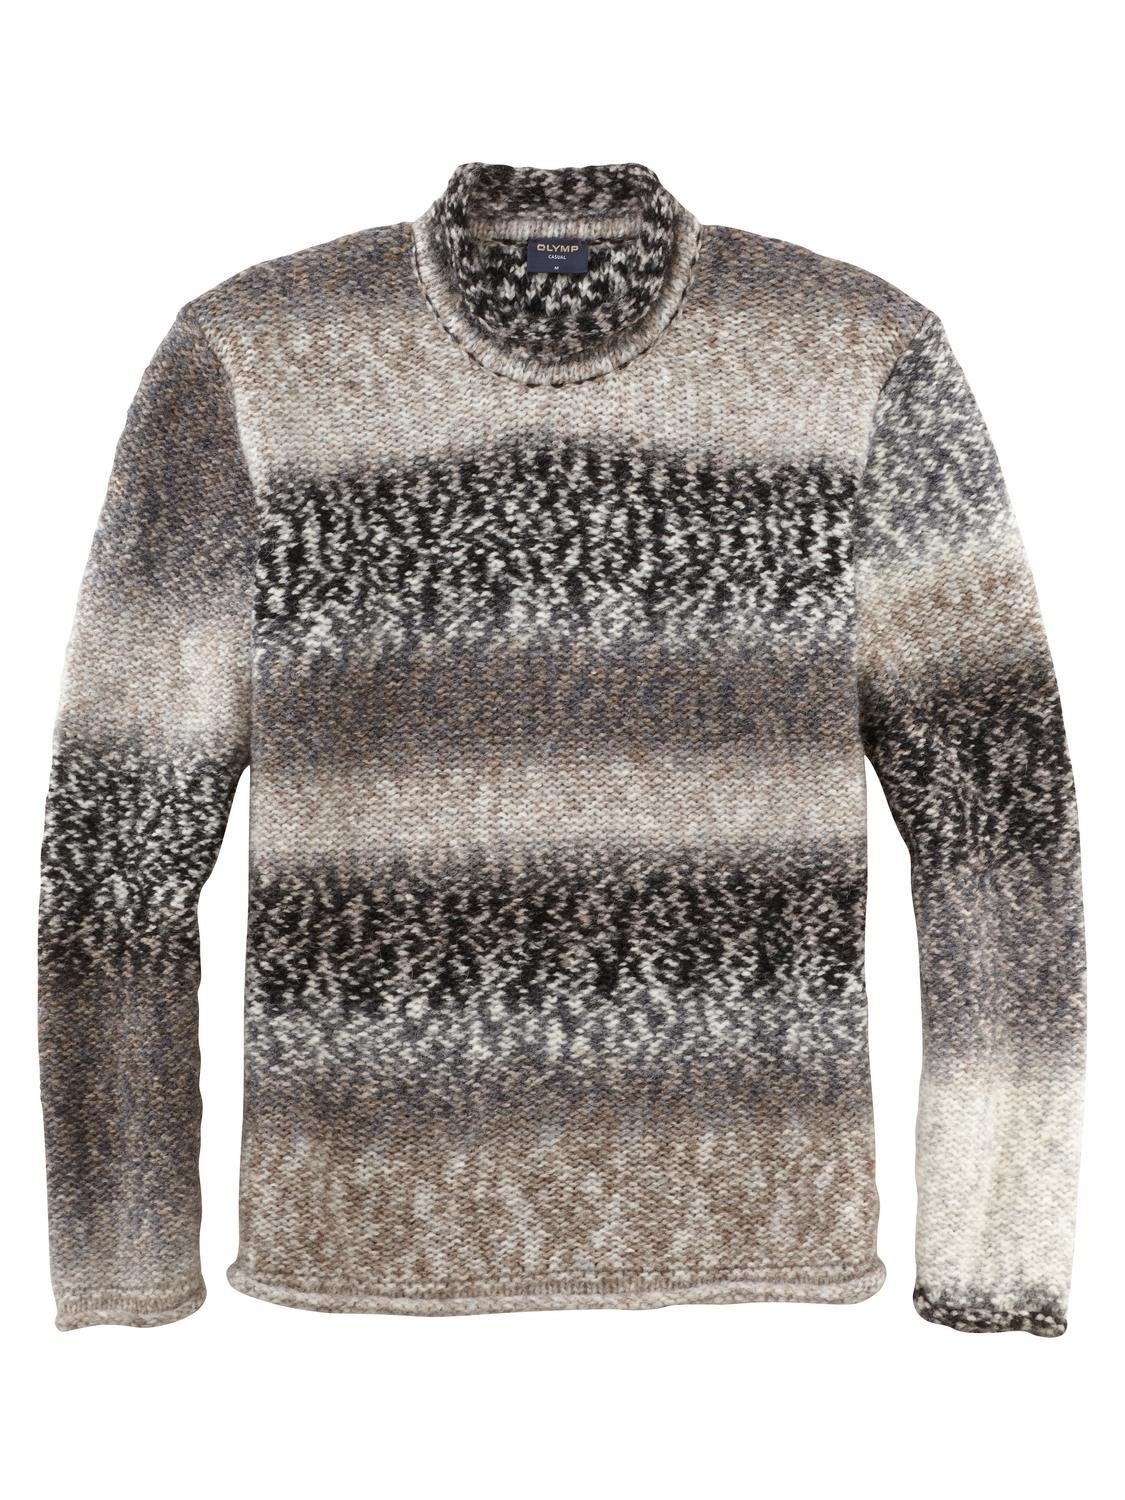 OLYMP Sweatshirt 5334/45 Pullover | V-Pullover